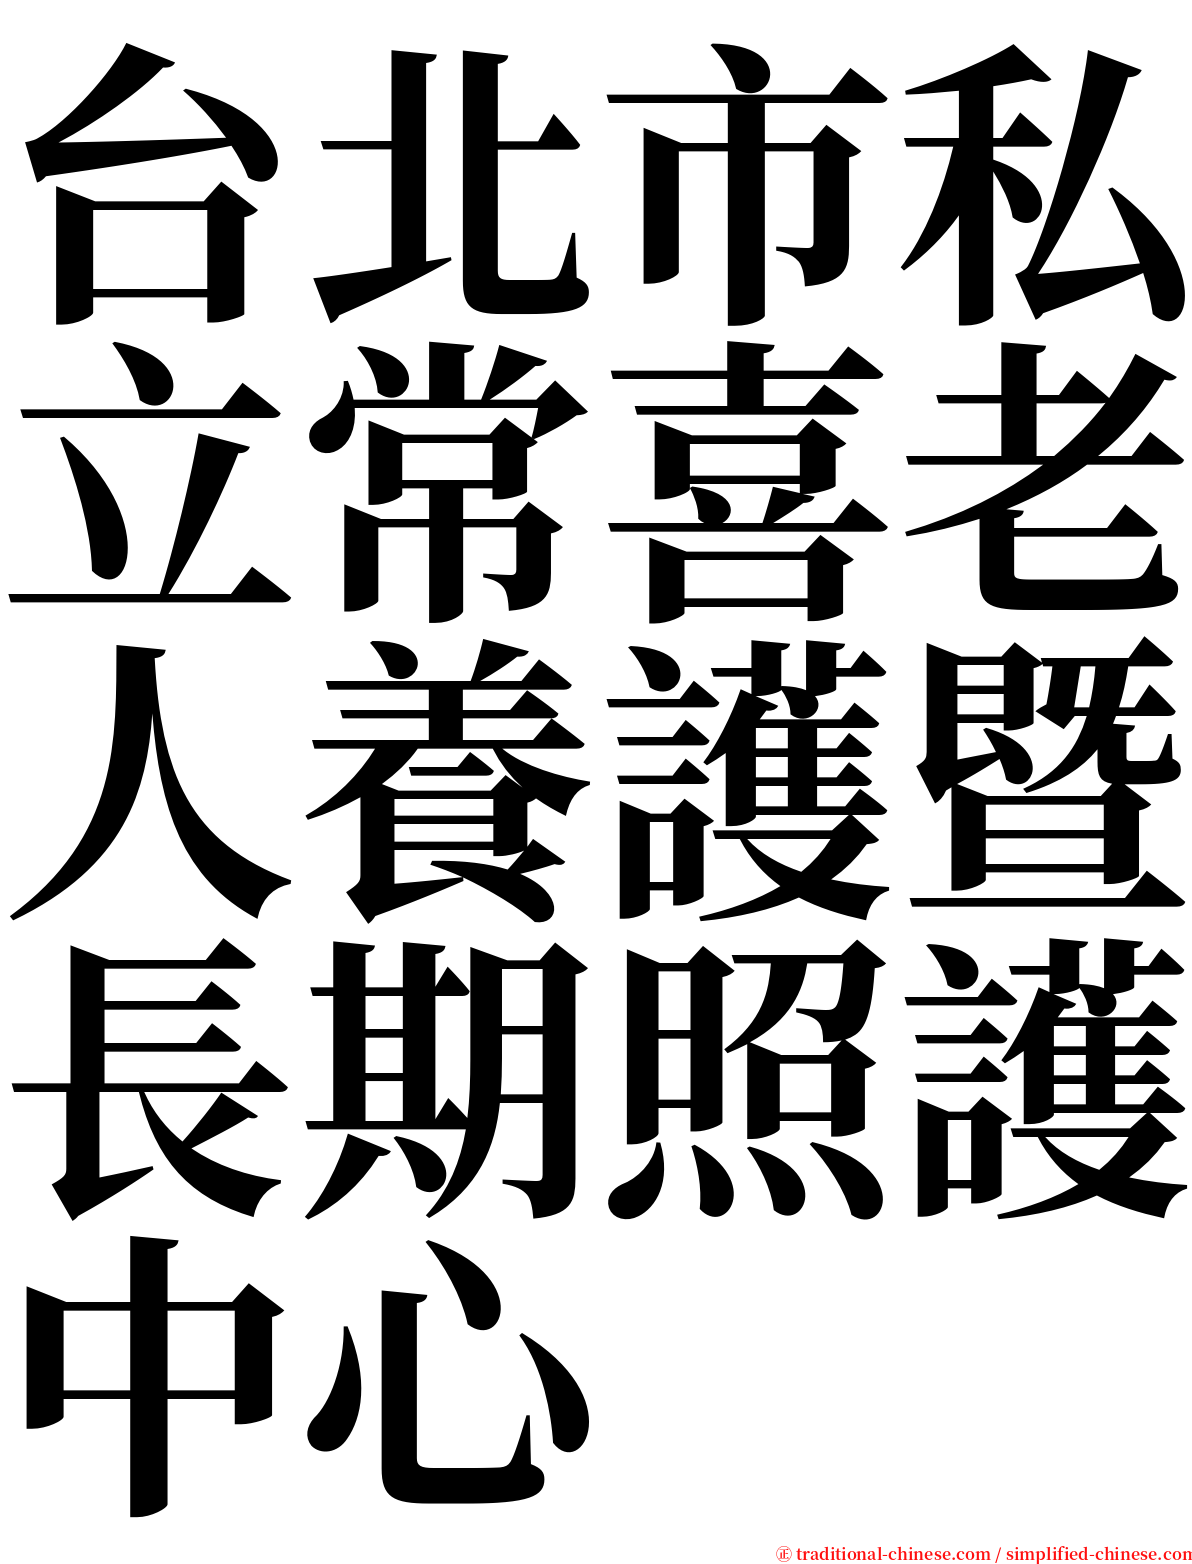 台北市私立常喜老人養護暨長期照護中心 serif font